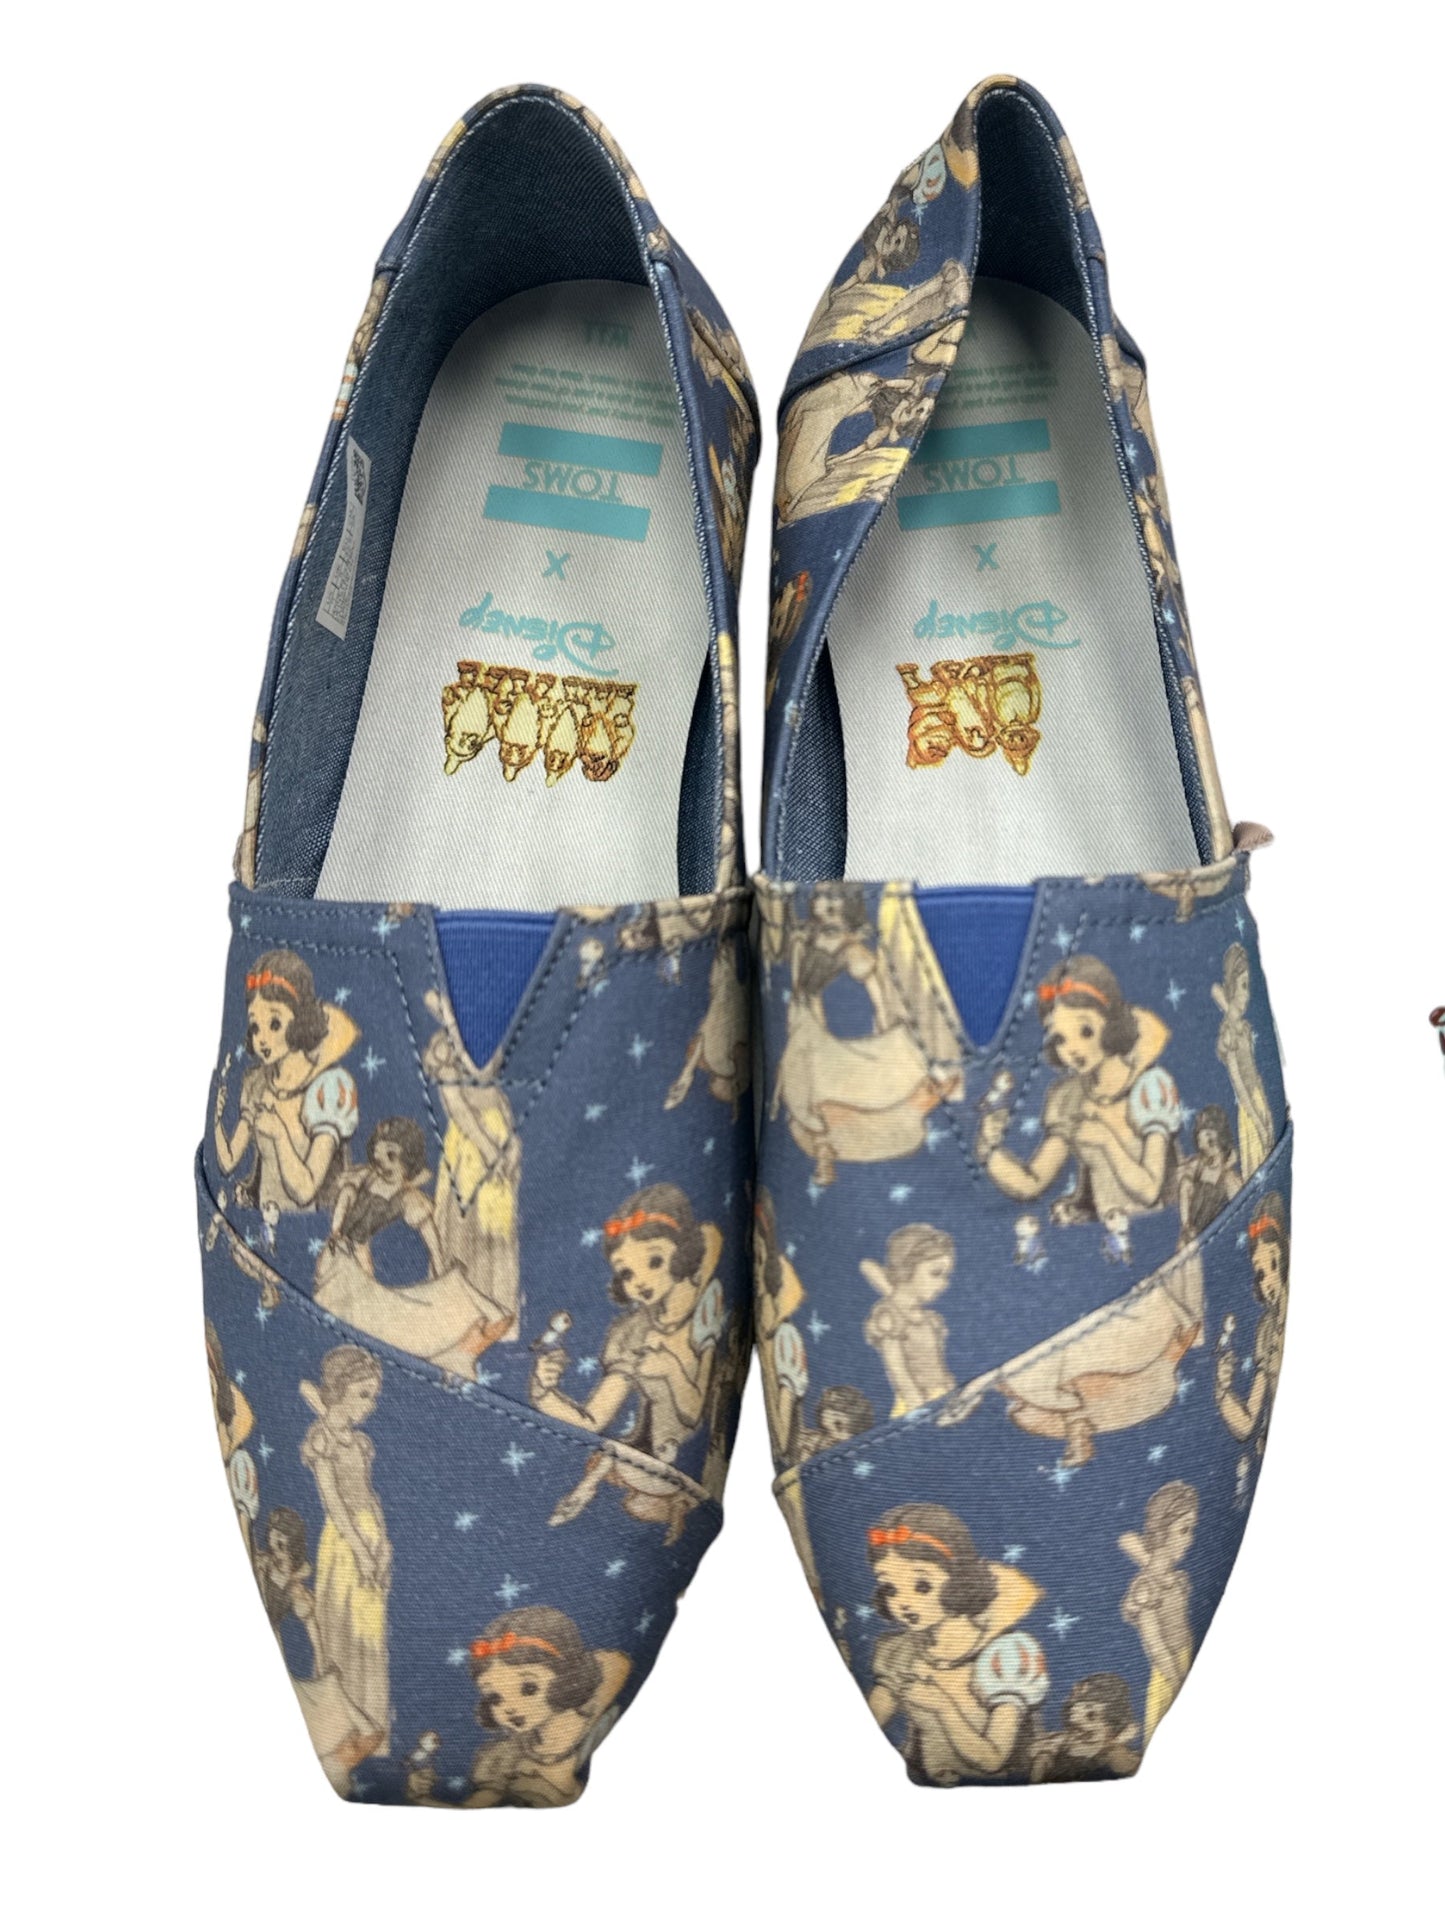 Blue Shoes Flats Toms, Size 11